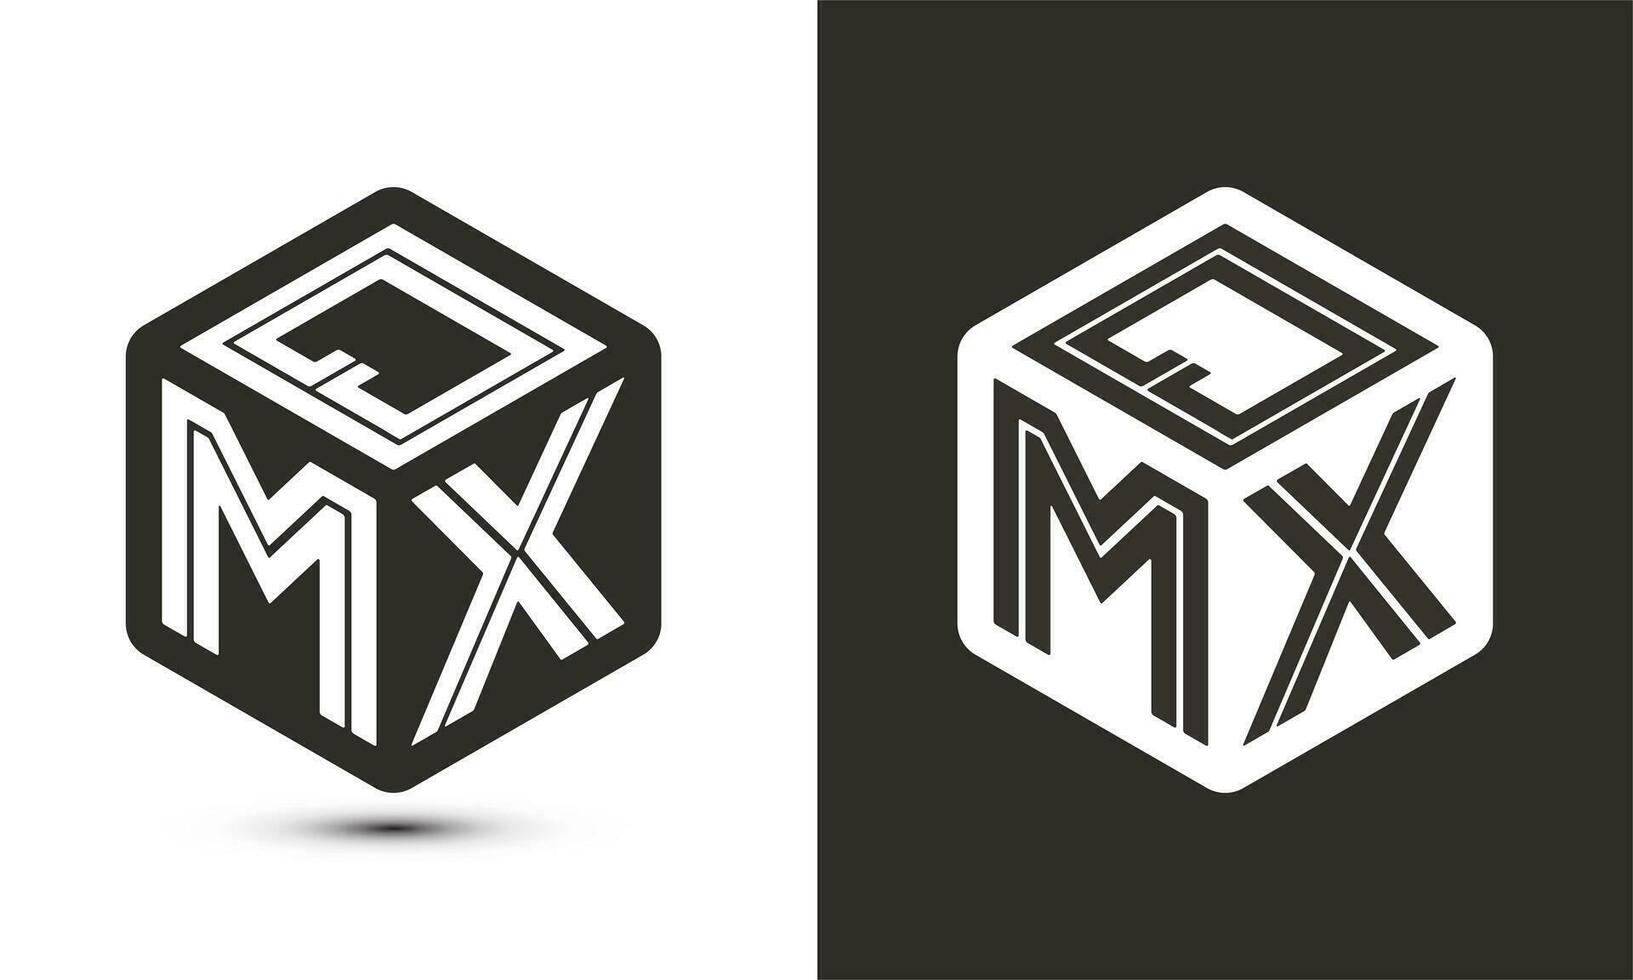 QMX letter logo design with illustrator cube logo, vector logo modern alphabet font overlap style.